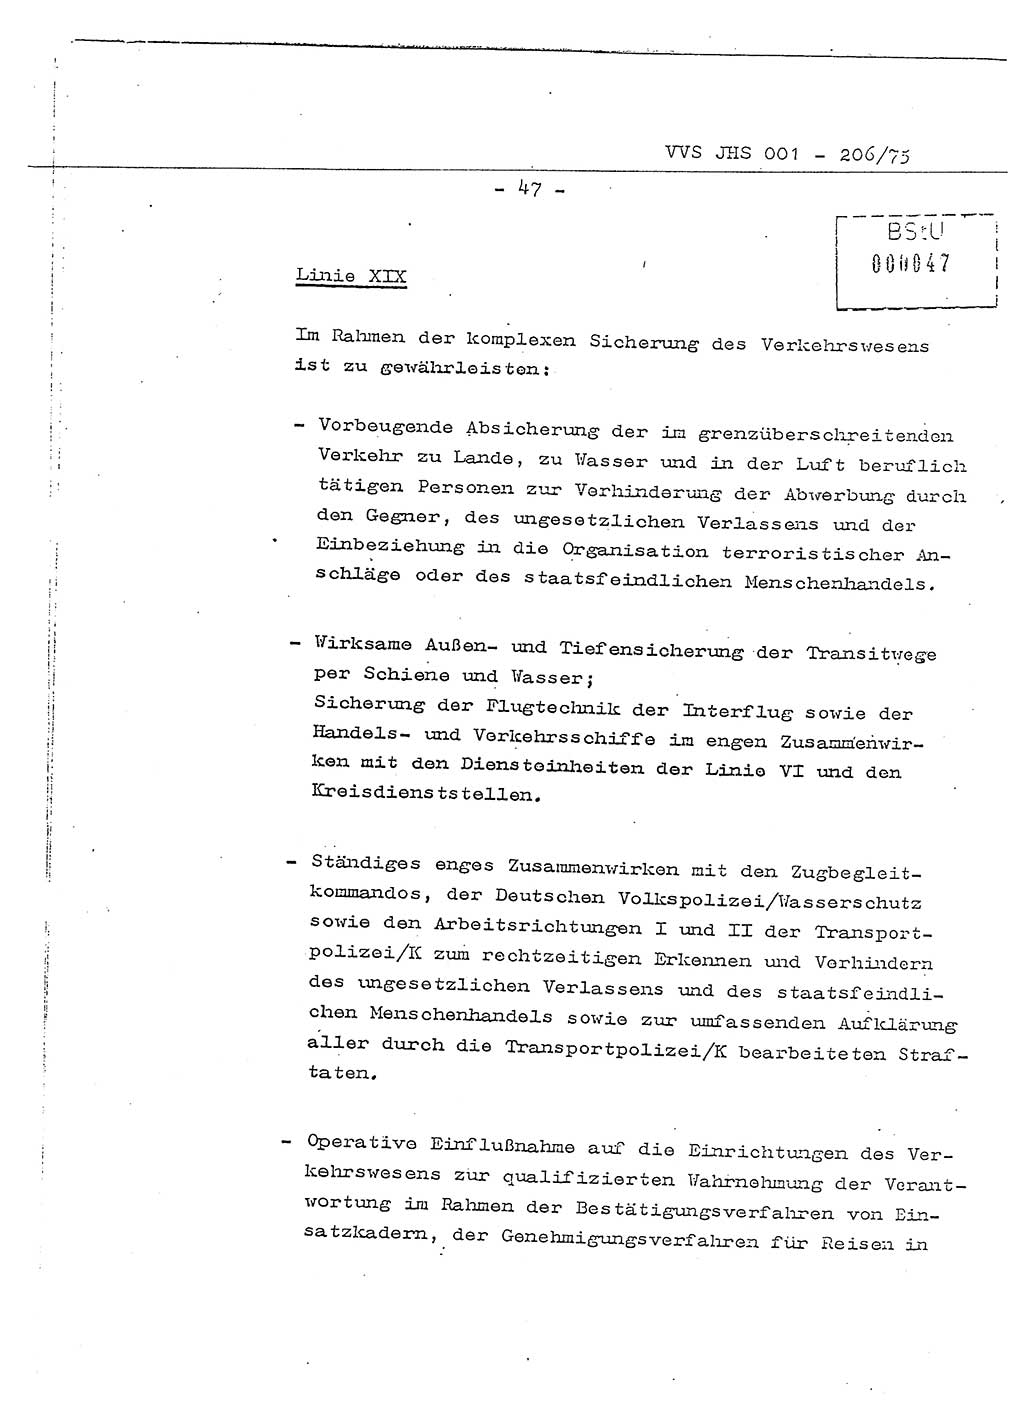 Dissertation Generalmajor Manfred Hummitzsch (Leiter der BV Leipzig), Generalmajor Heinz Fiedler (HA Ⅵ), Oberst Rolf Fister (HA Ⅸ), Ministerium für Staatssicherheit (MfS) [Deutsche Demokratische Republik (DDR)], Juristische Hochschule (JHS), Vertrauliche Verschlußsache (VVS) 001-206/75, Potsdam 1975, Seite 47 (Diss. MfS DDR JHS VVS 001-206/75 1975, S. 47)